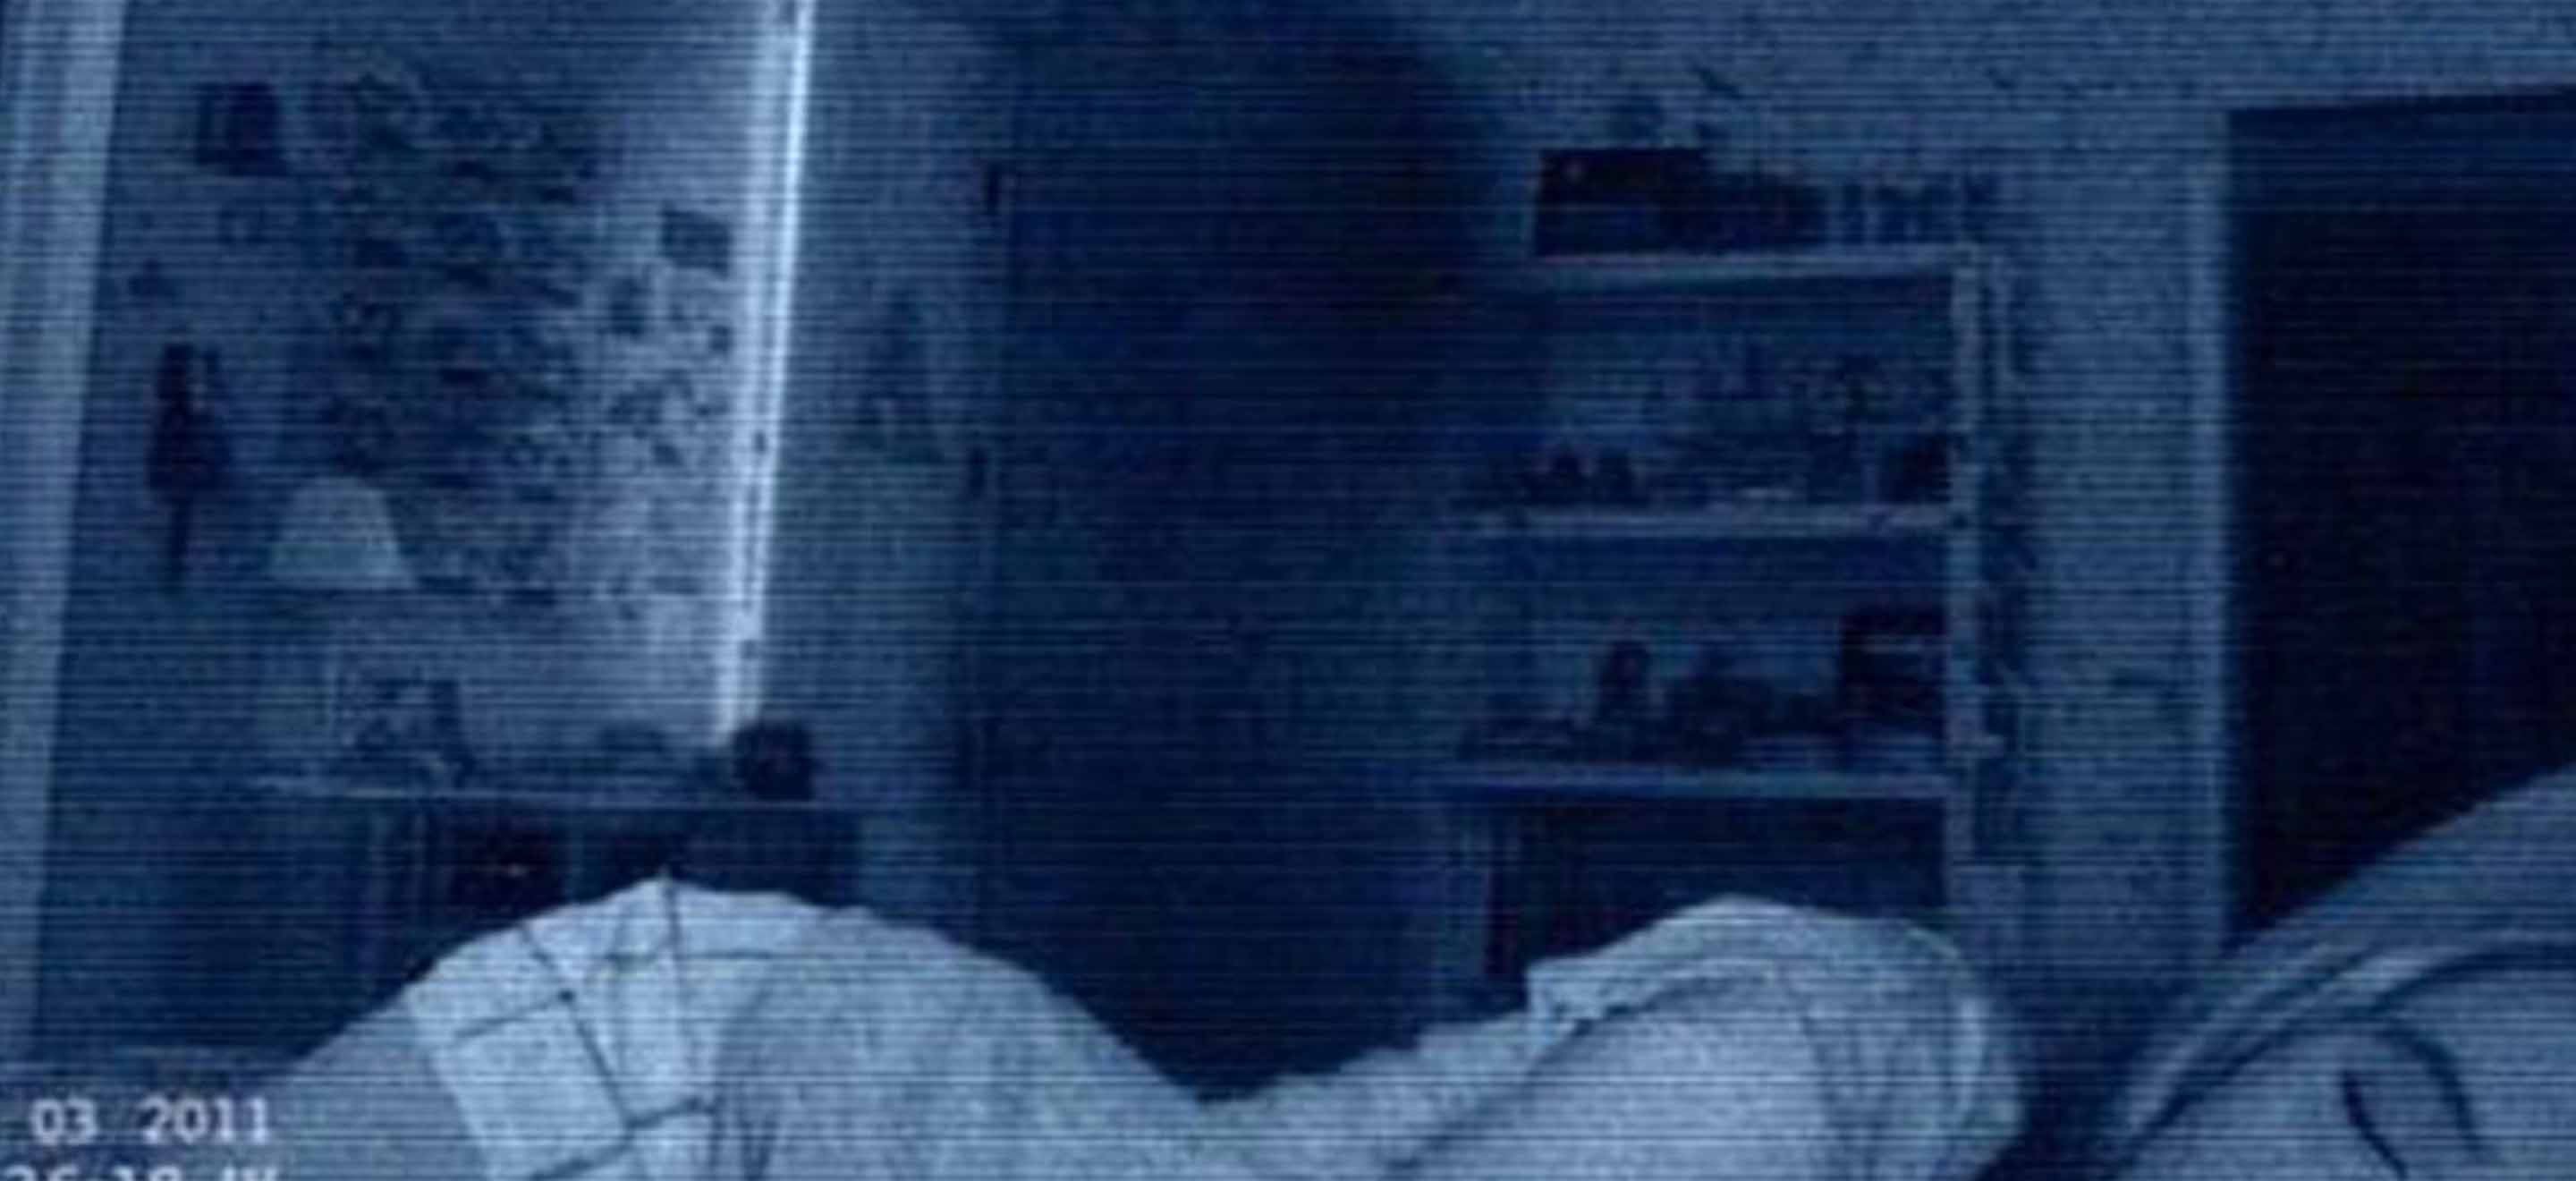 Non, les suites de Paranormal Activity ne sont pas mauvaises